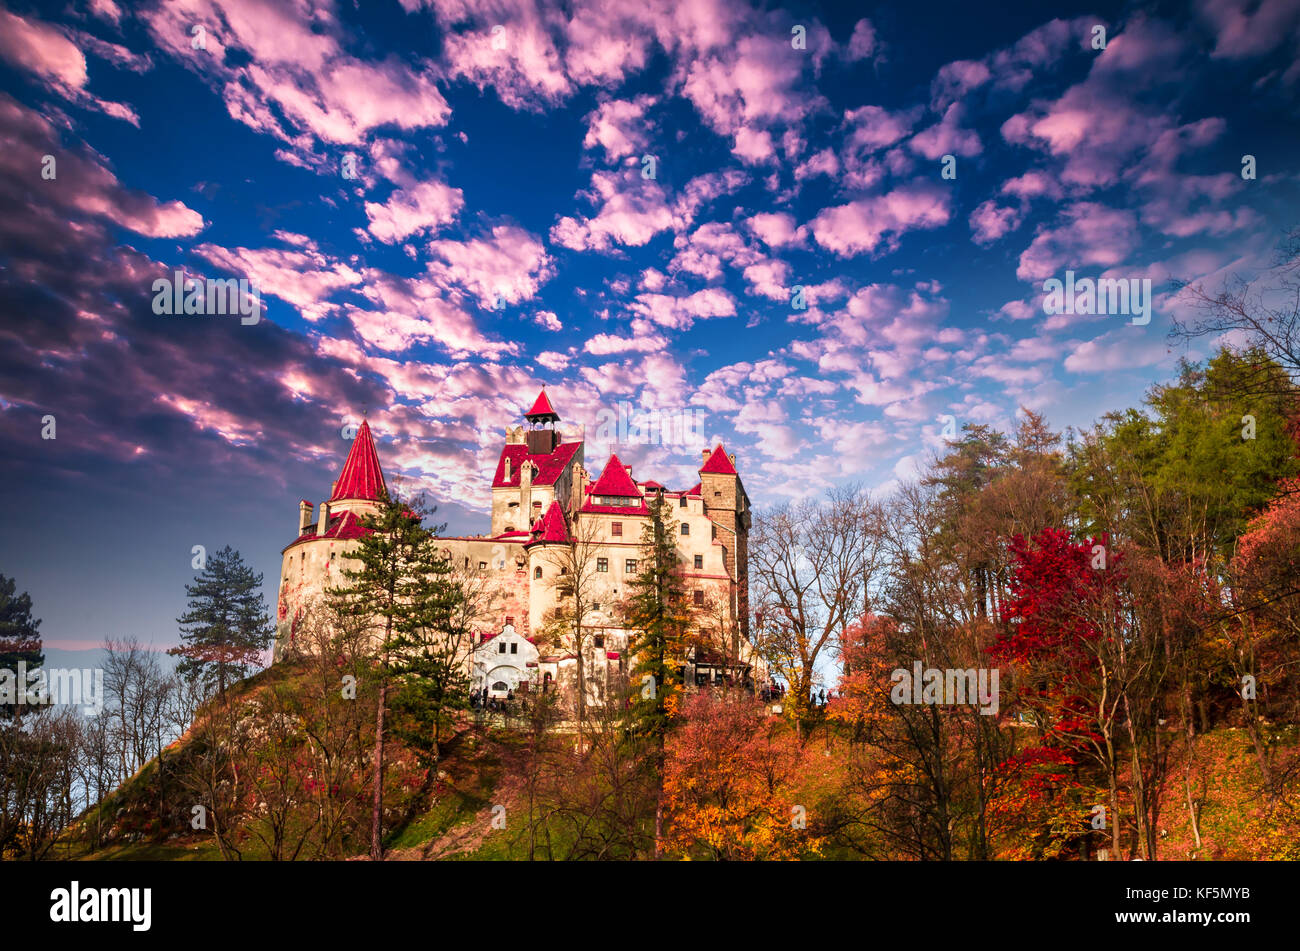 Le château de Bran, Transylvanie, Roumanie. un bâtiment médiéval connu sous le nom de château de Dracula. Banque D'Images